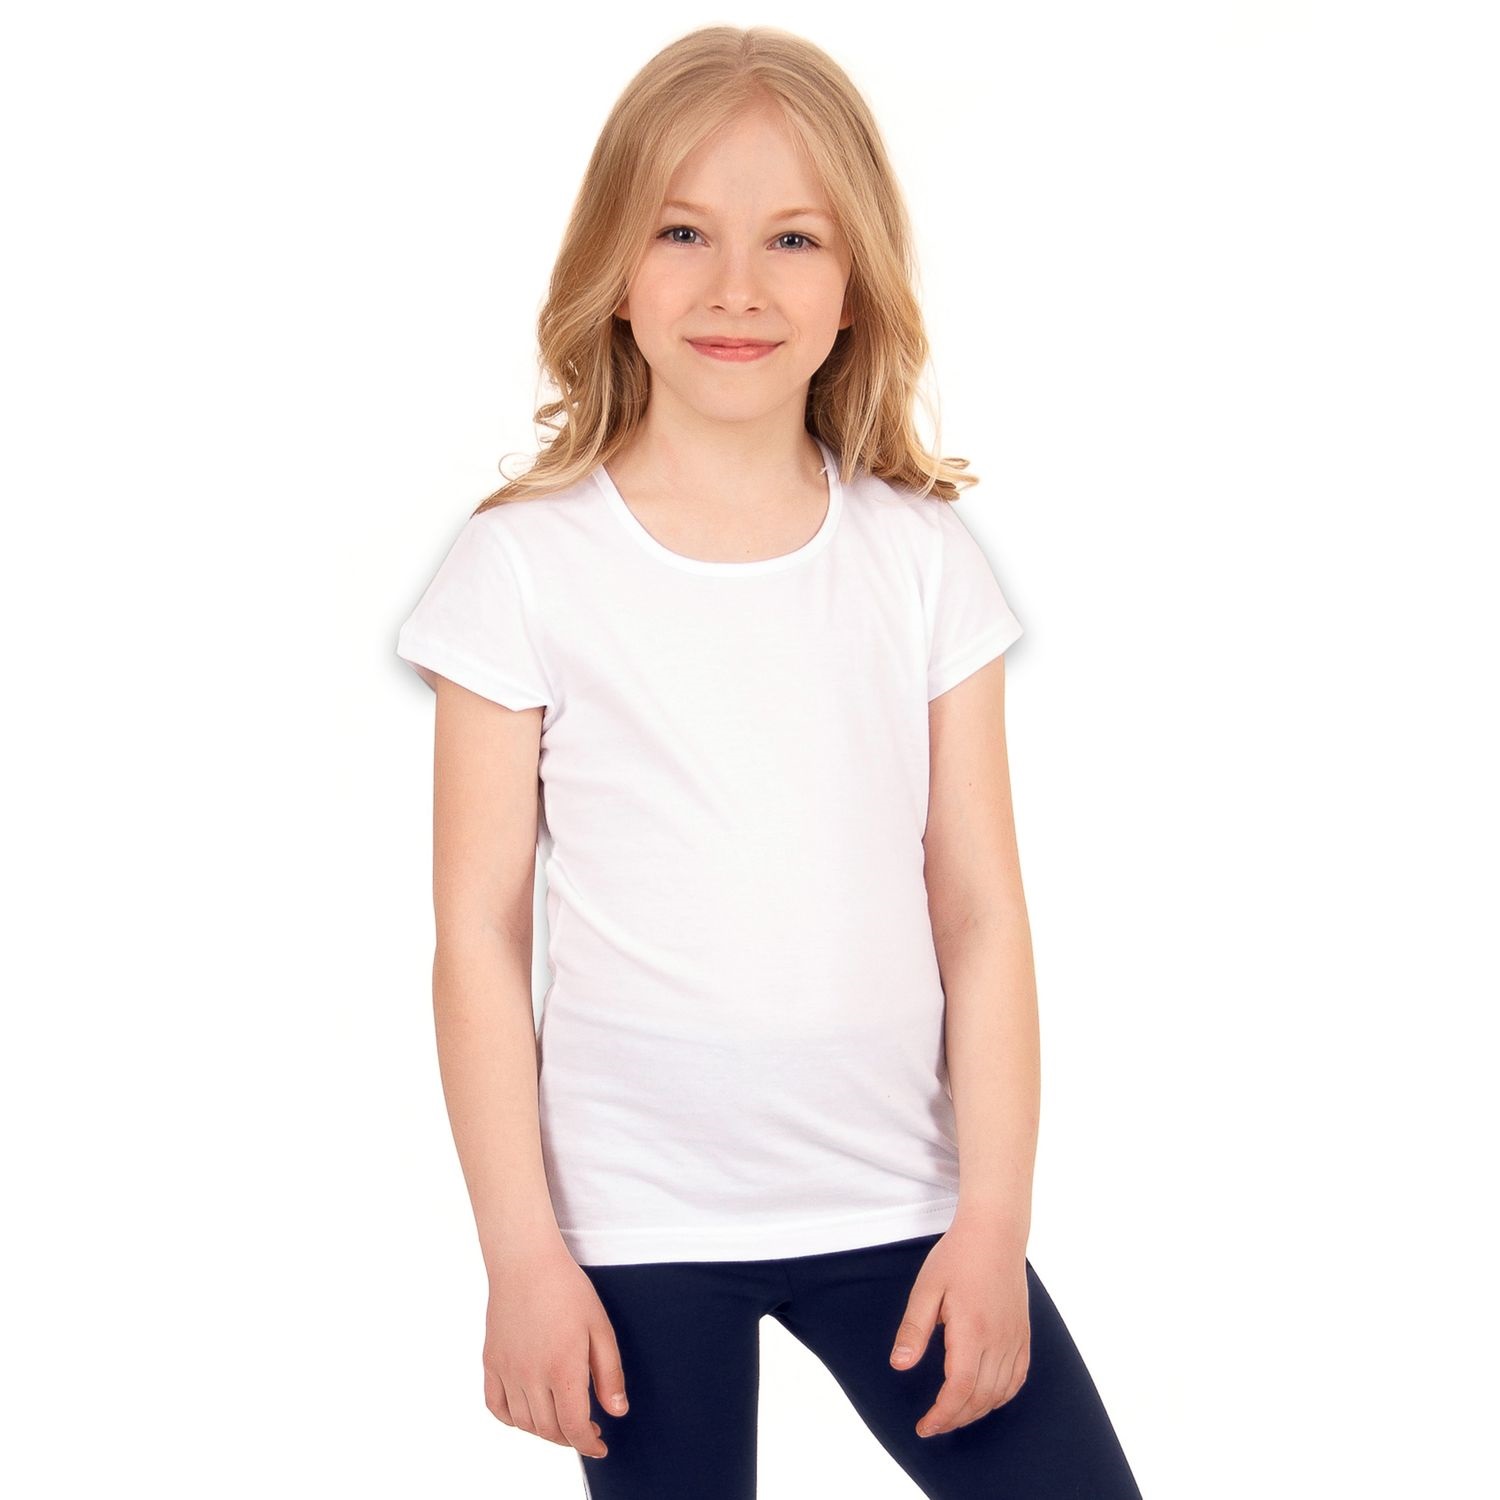 Ребенок в белой футболке